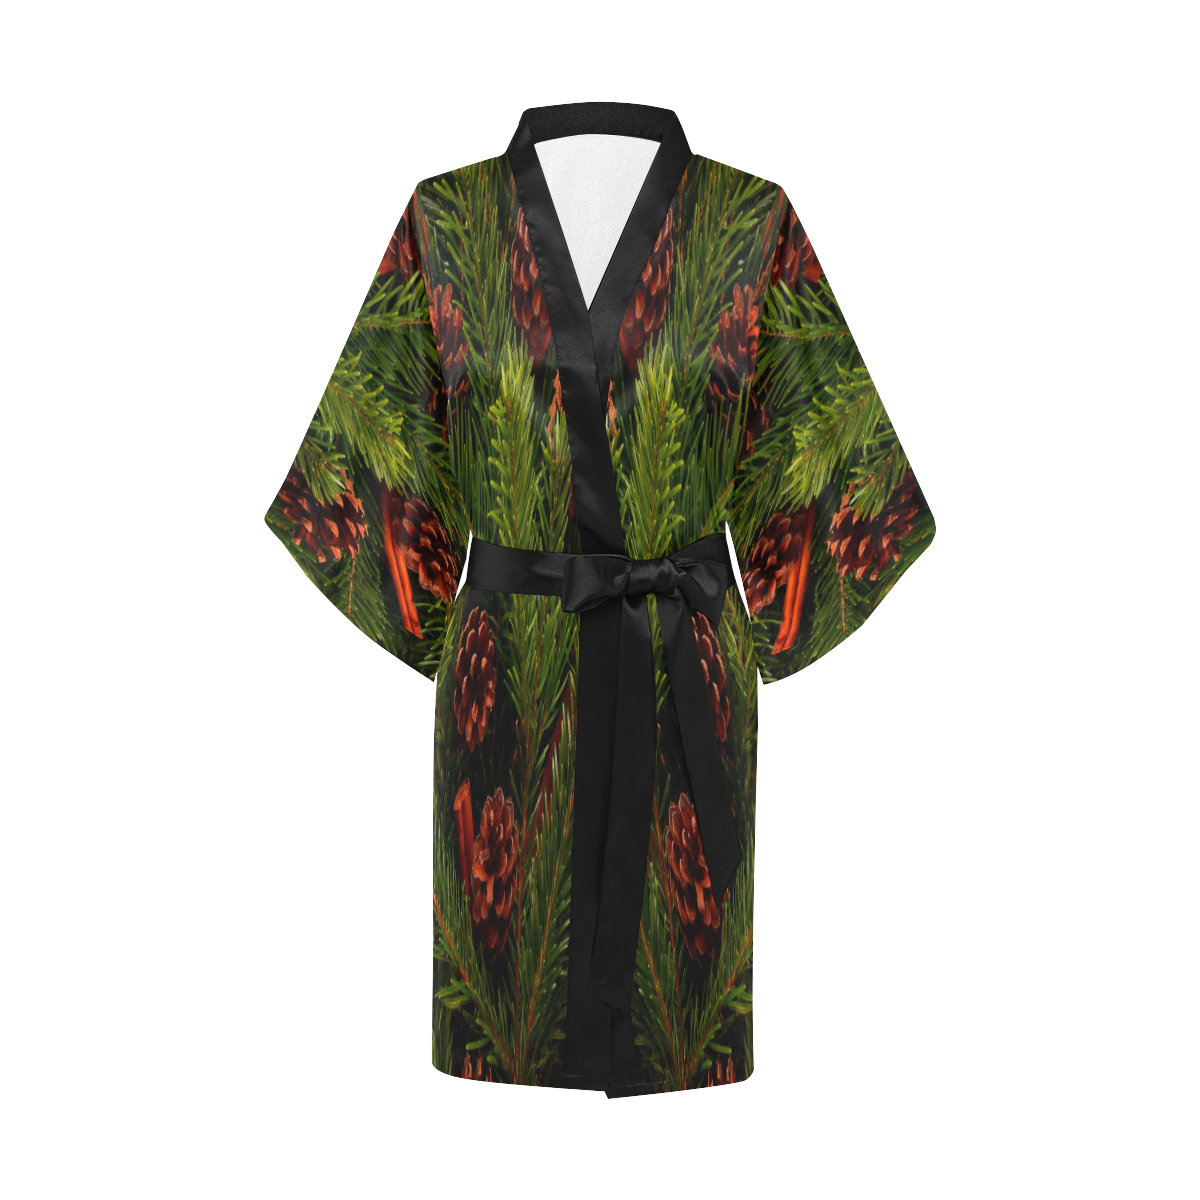 Winter by Artdream Kimono Robe